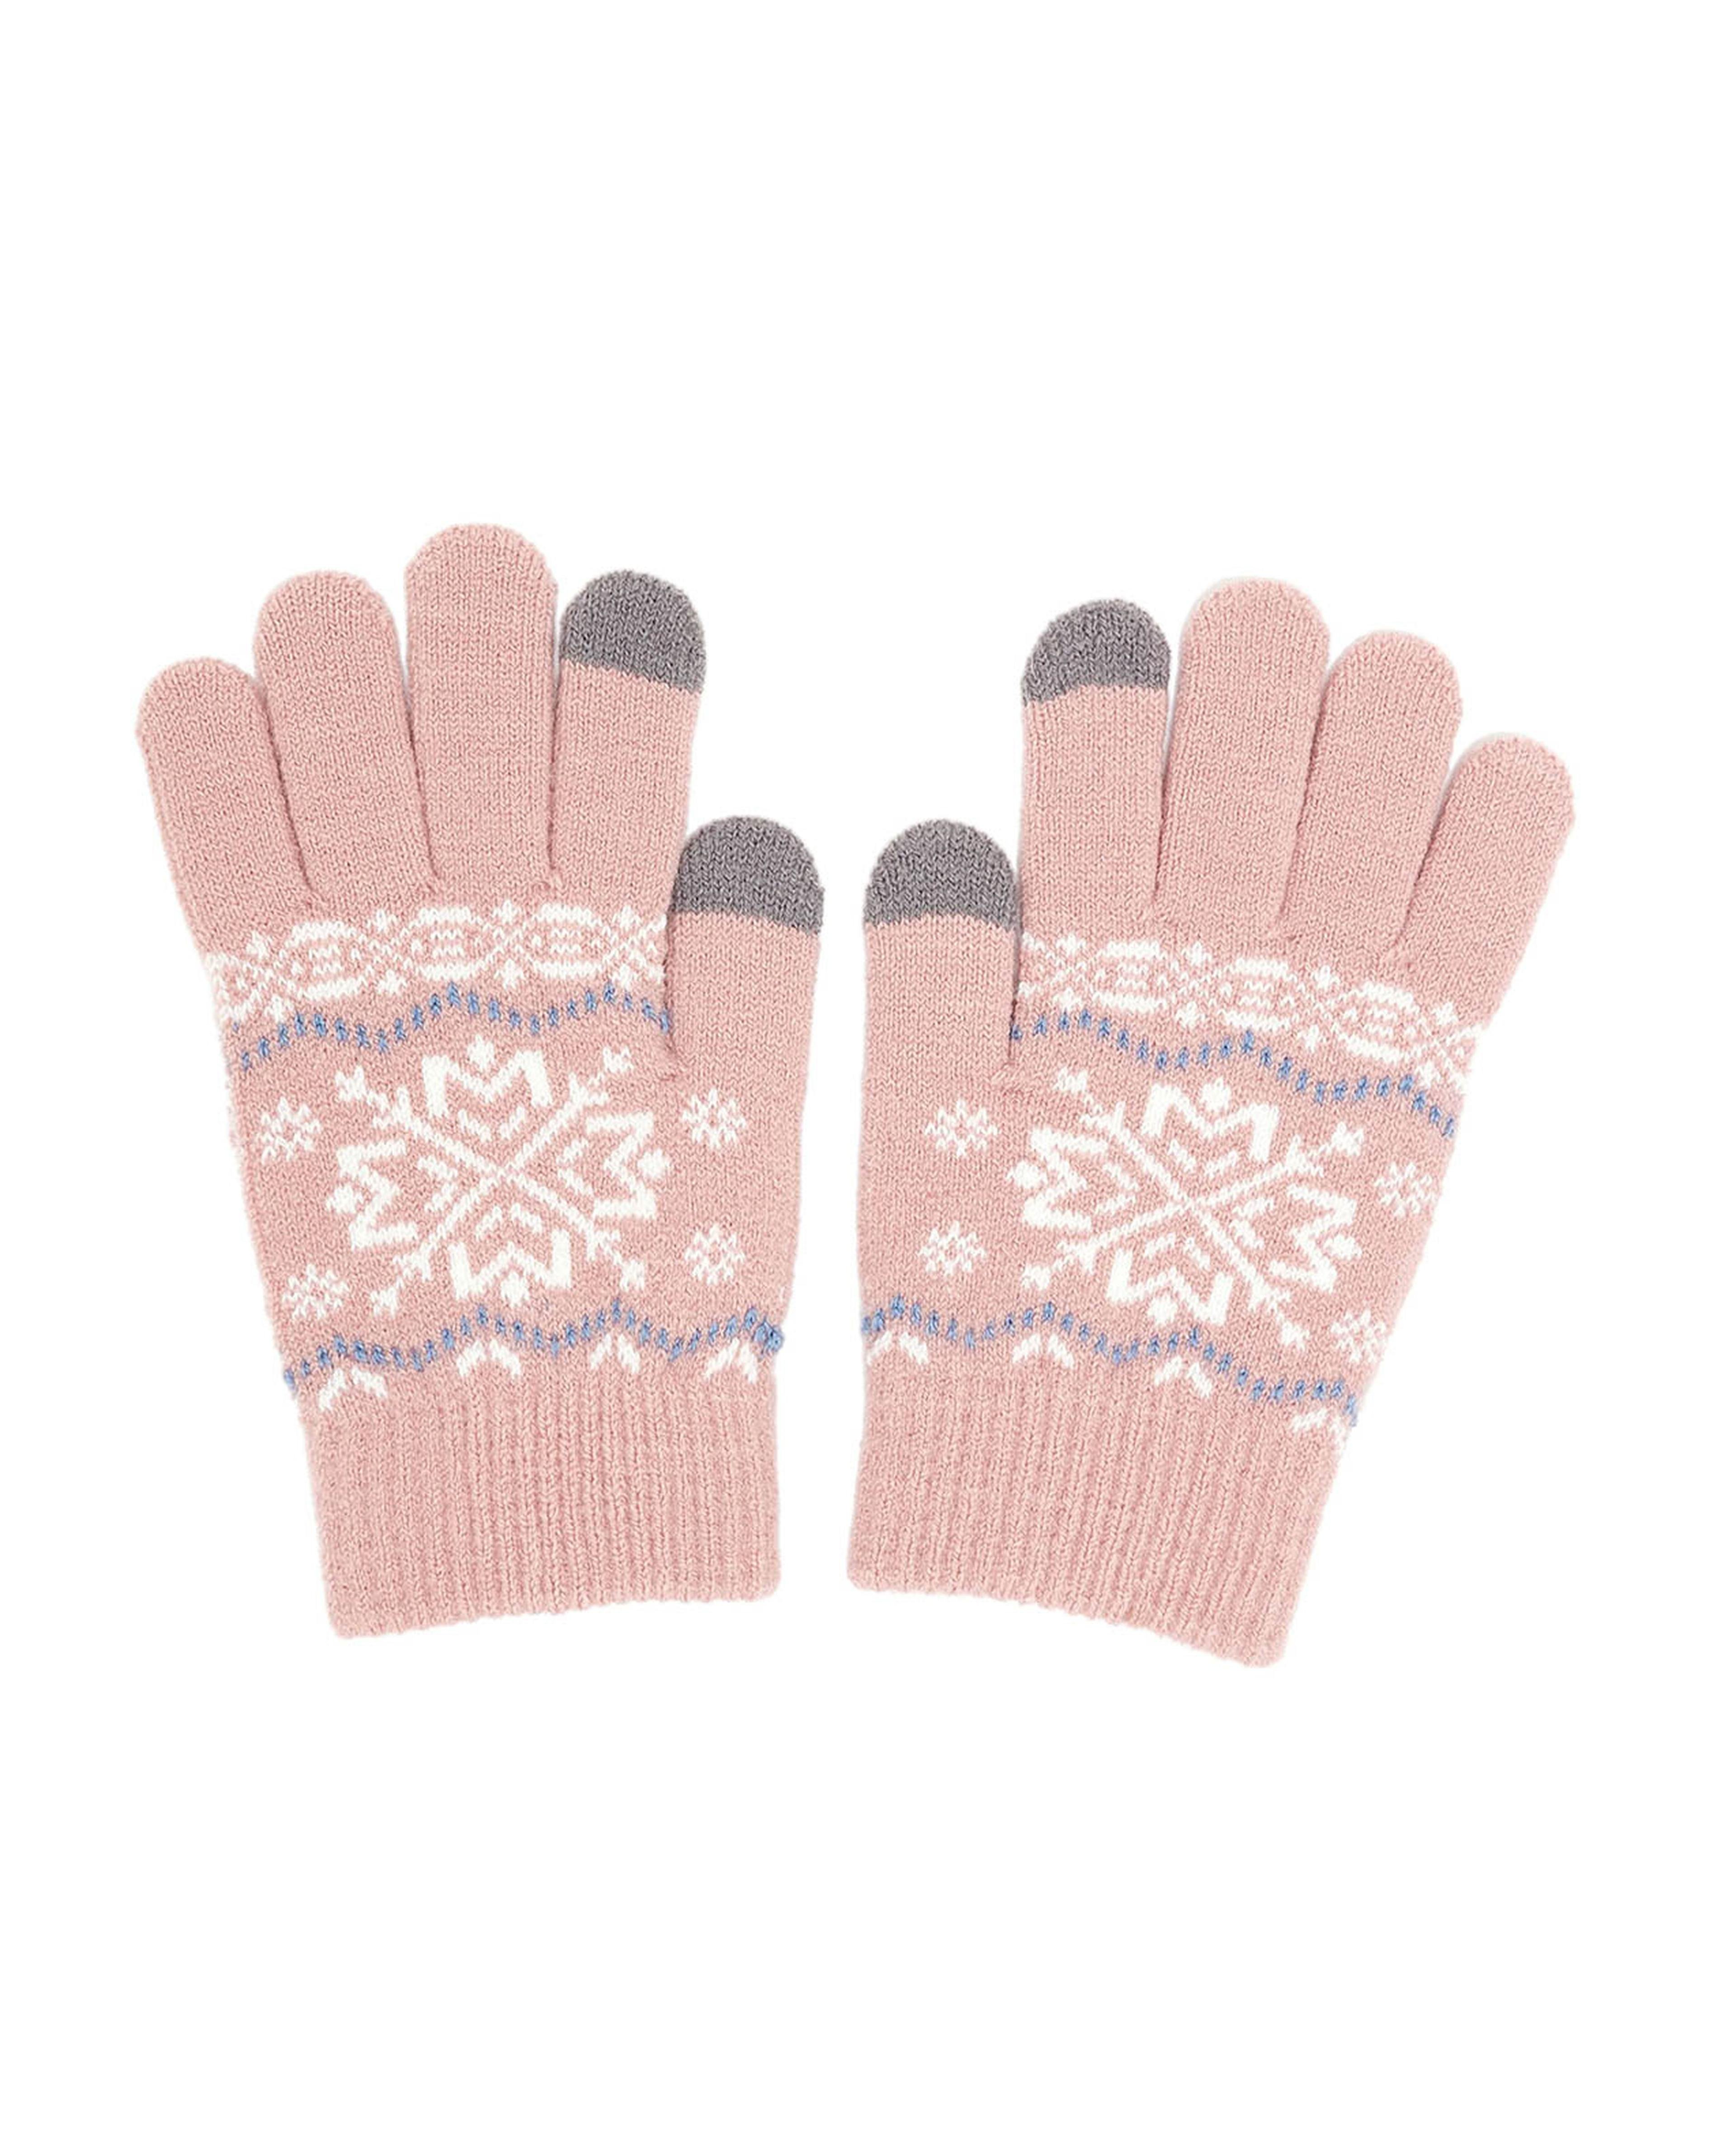 Patterned Knit Gloves